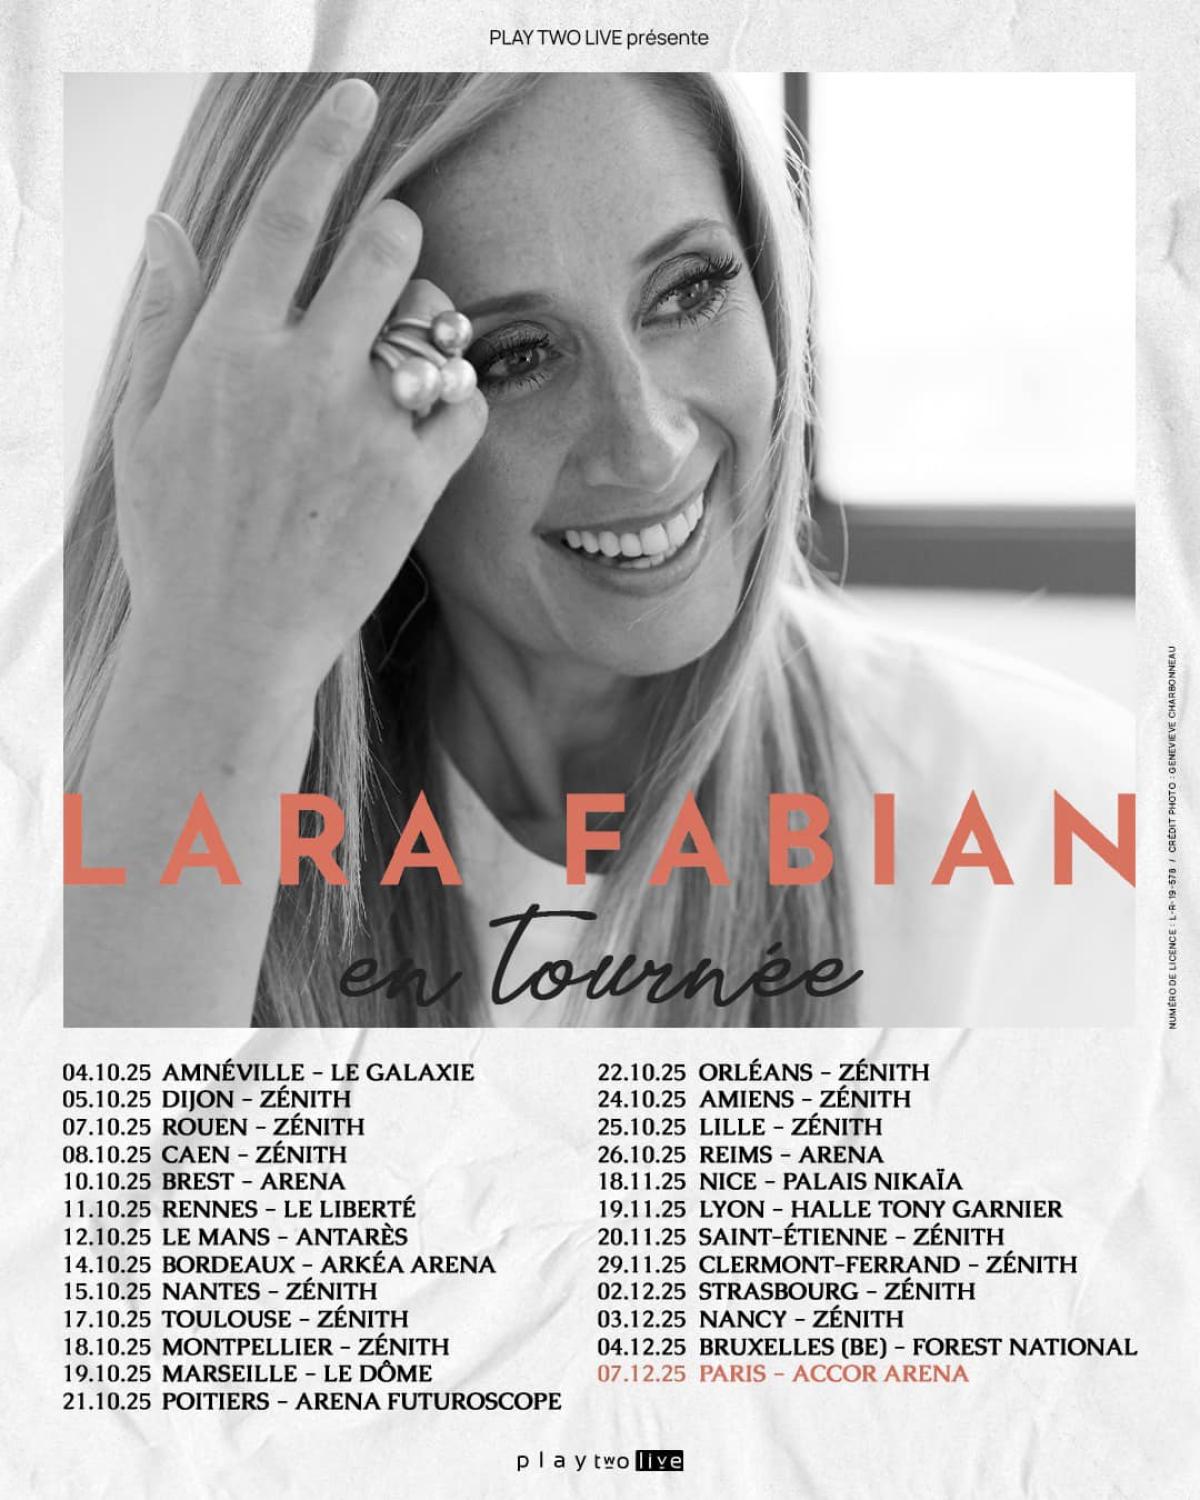 Lara Fabian at Zenith Strasbourg Tickets